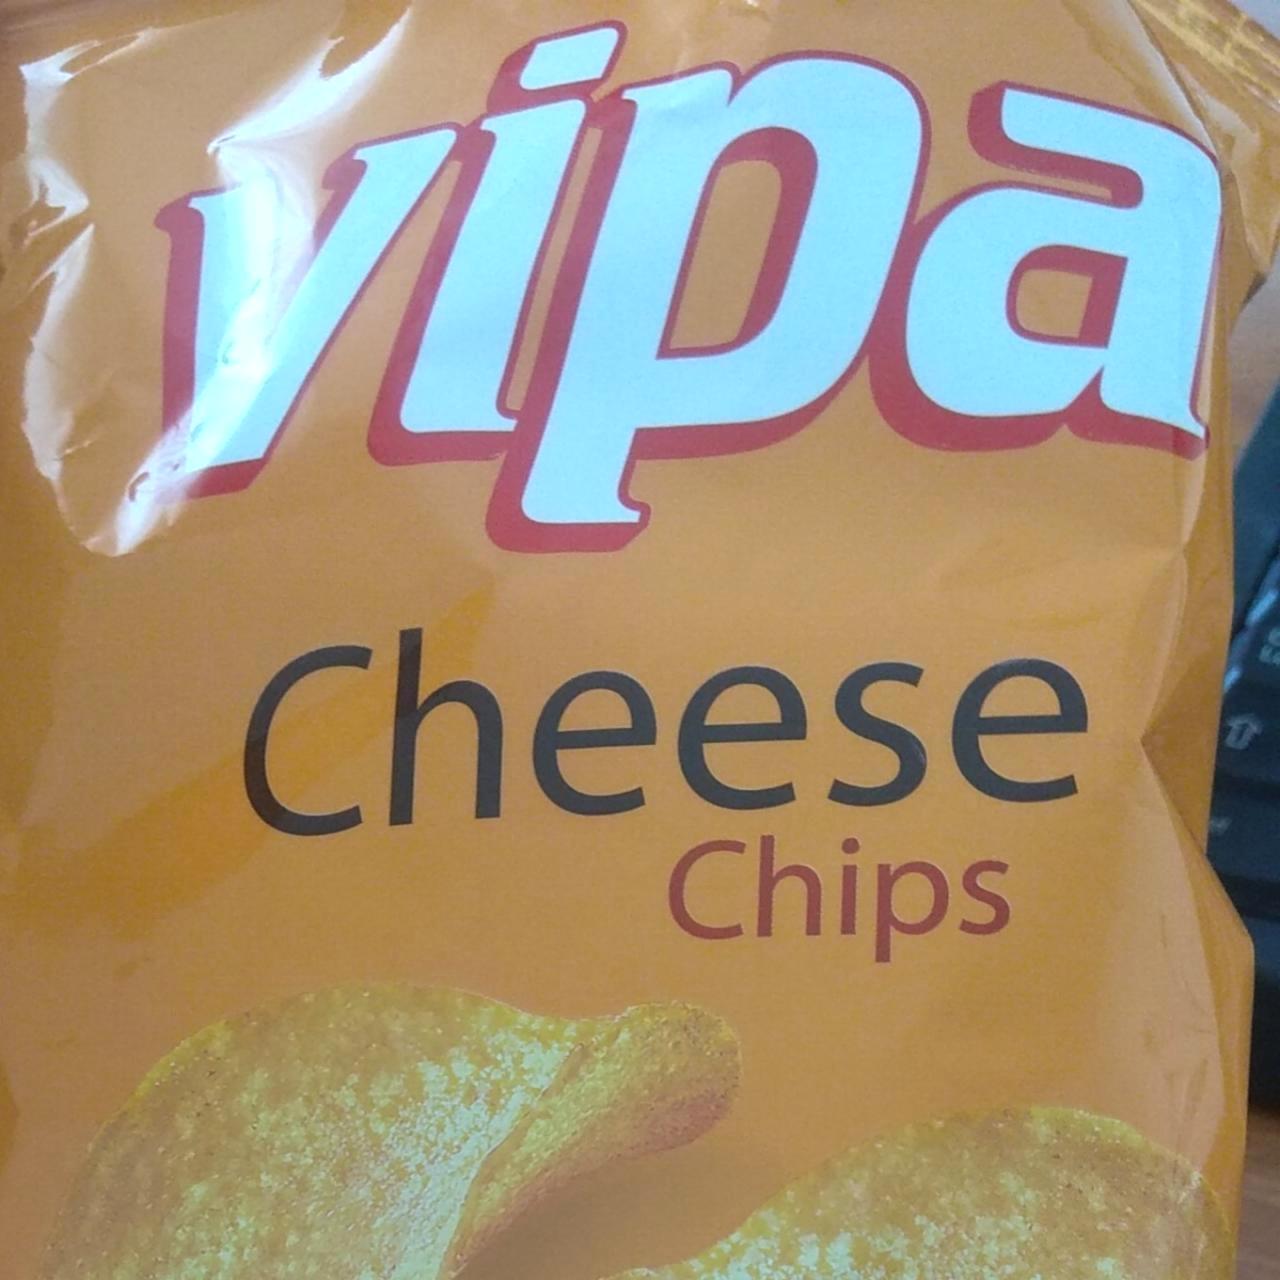 Képek - Cheese chips Vipa